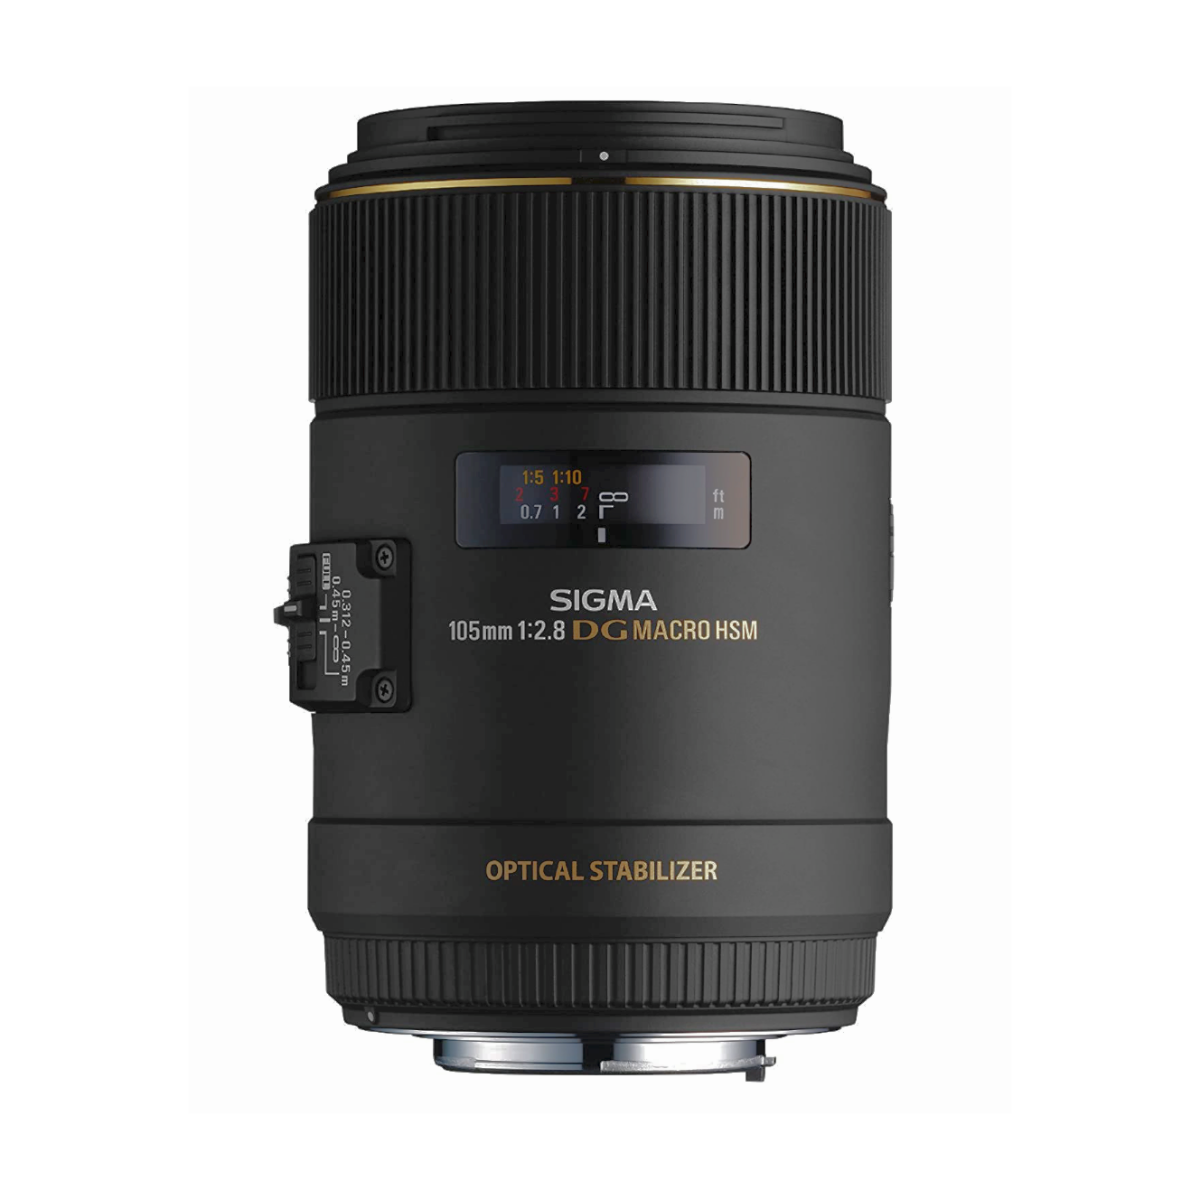 A Sigma 105mm F2.8 EX DG OS HSM Macro lens